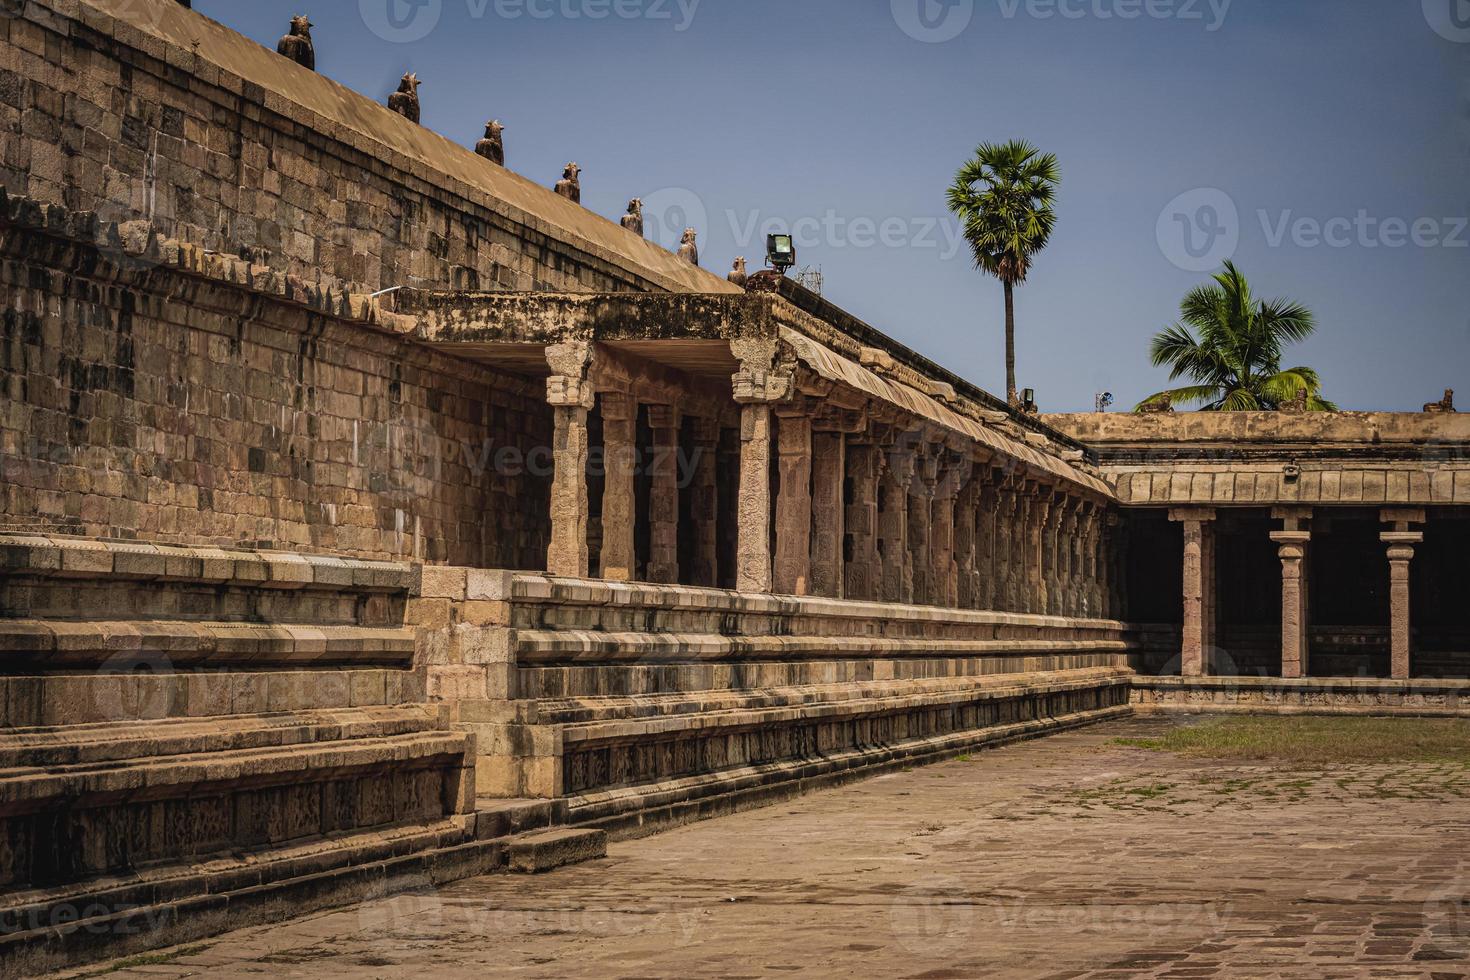 Le temple shri airavatesvara est un temple hindou situé à dharasuram, kumbakonam, tamil nadu. il a été construit par l'empereur chola rajaraja-2. le temple dédié à shiva. c'est un site du patrimoine mondial de l'unesco. photo